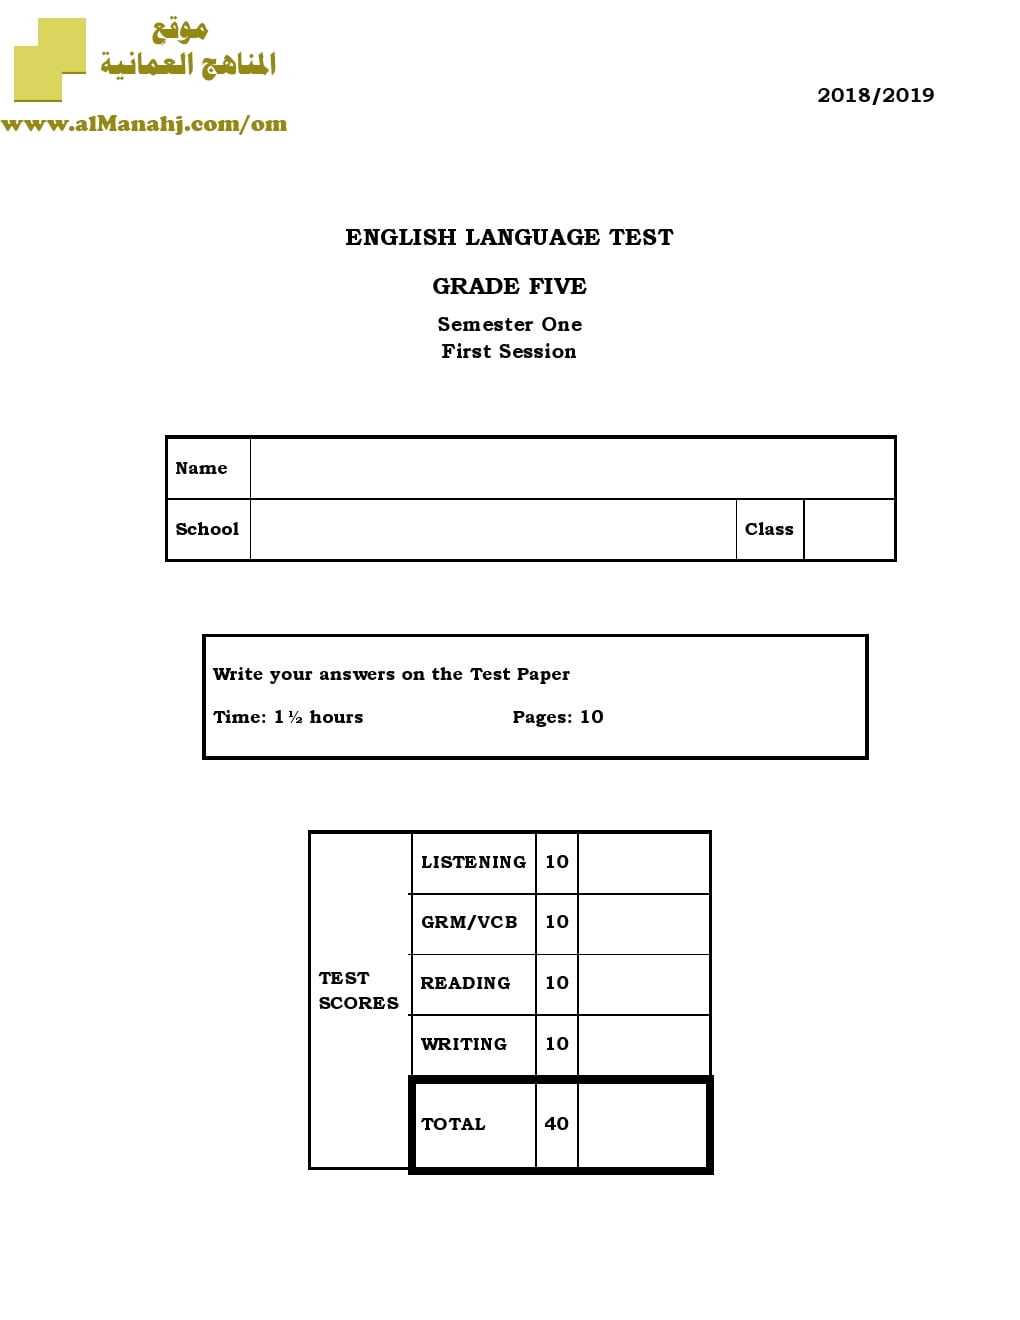 أسئلة وإجابة الامتحان الرسمي للفصل الدراسي الأول الدور الأول والثاني ~ (لغة انجليزية) الخامس